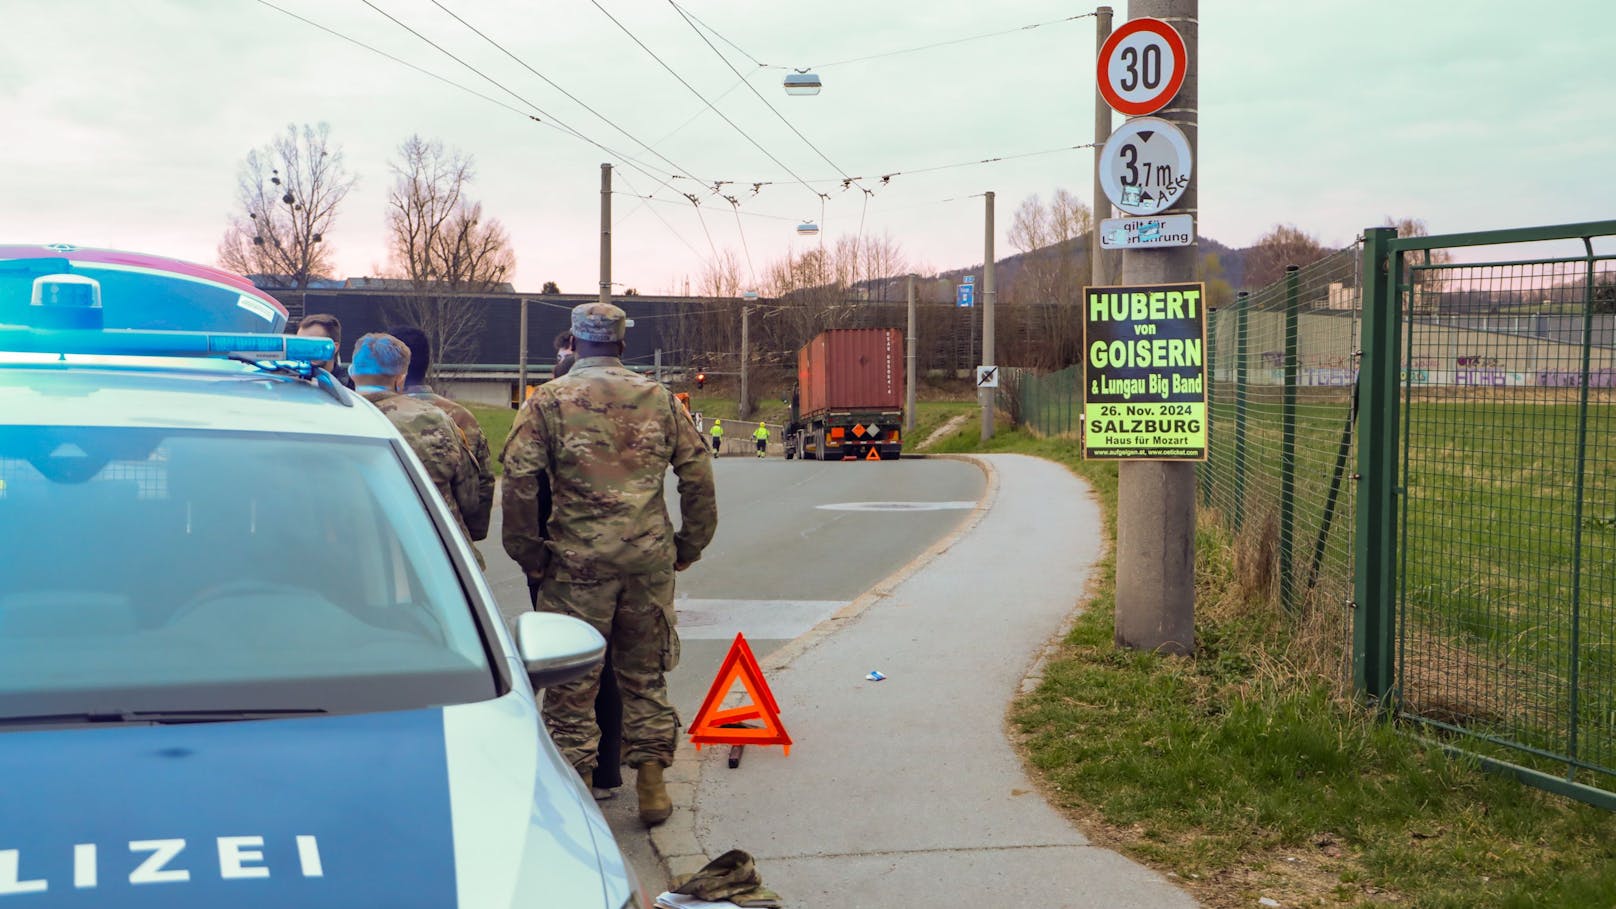 Später stellte sich heraus, dass die Laster tatsächlich Munition geladen hatten, die von Slowenien zu einer NATO-Übung in Deutschland gebracht werden sollten.